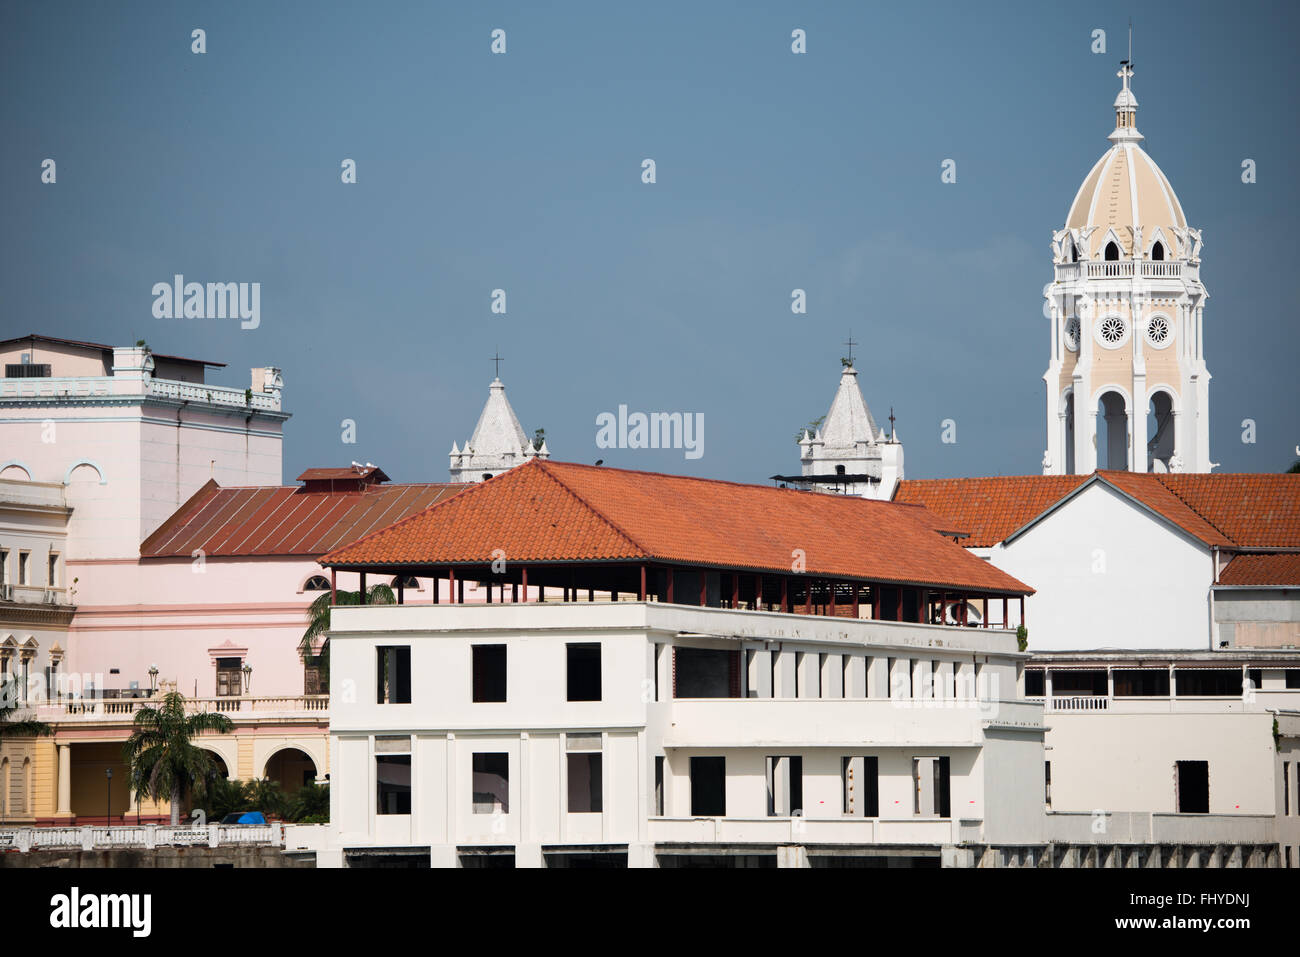 PANAMA CITY, Panama - historische Gebäude von Casco Viejo an der Küste von Panama City, Panama, Panama Bucht, von der Küste Beltway (Cinta Costera III) gesehen. Stockfoto